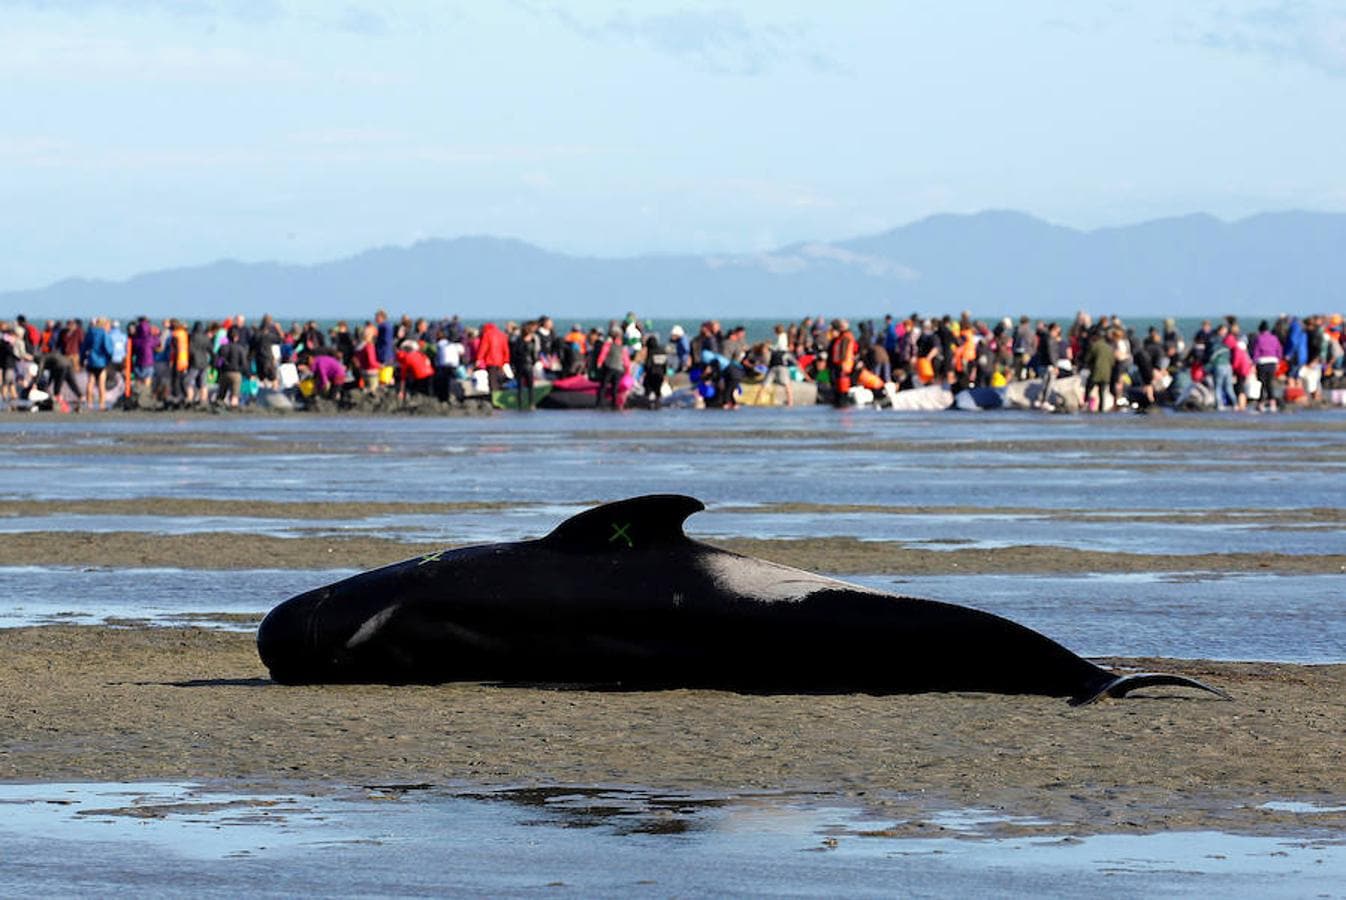 Las ballenas piloto han quedado varadas en una playa en Farewell Spit, en la isla Sur. Decenas de voluntarios y ecologistas de la zona se encuentran en la playa tratando de mantener con vida a las ballenas que han sobrevivido